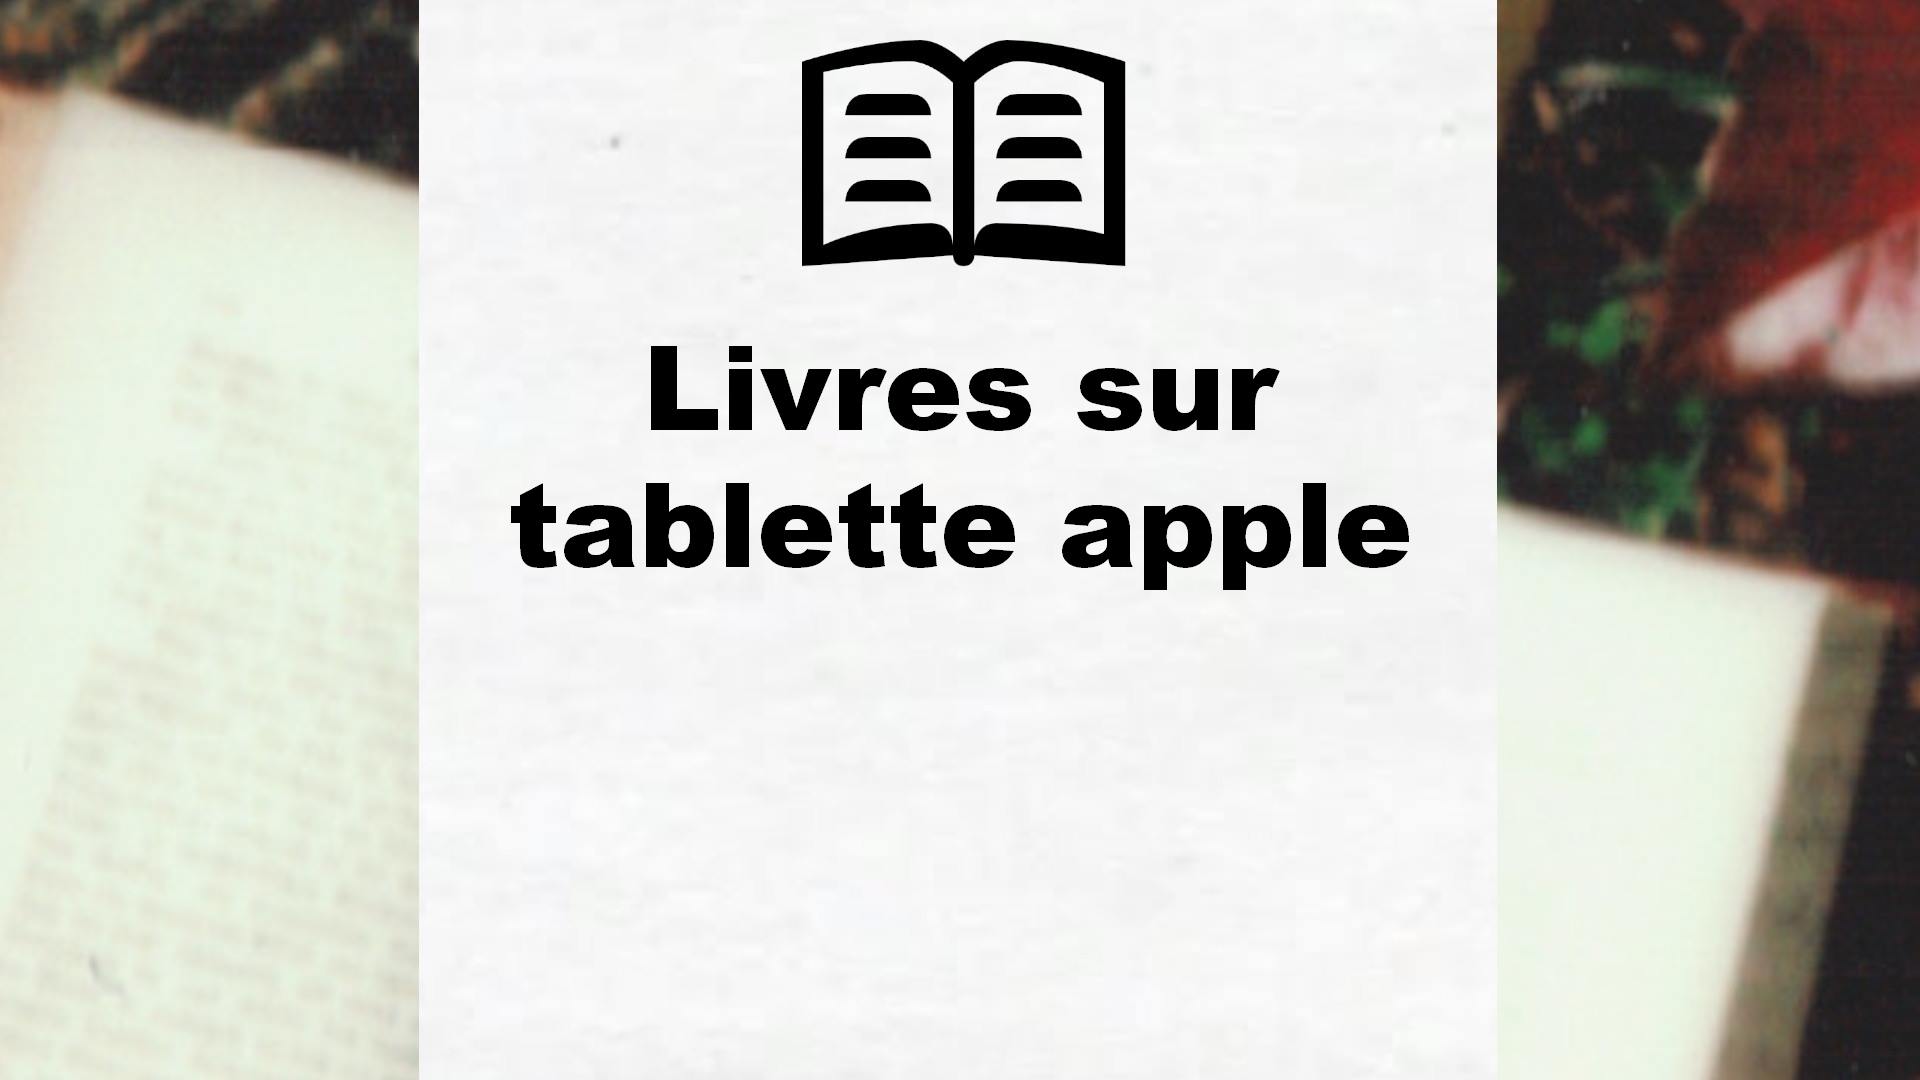 Livres sur tablette apple